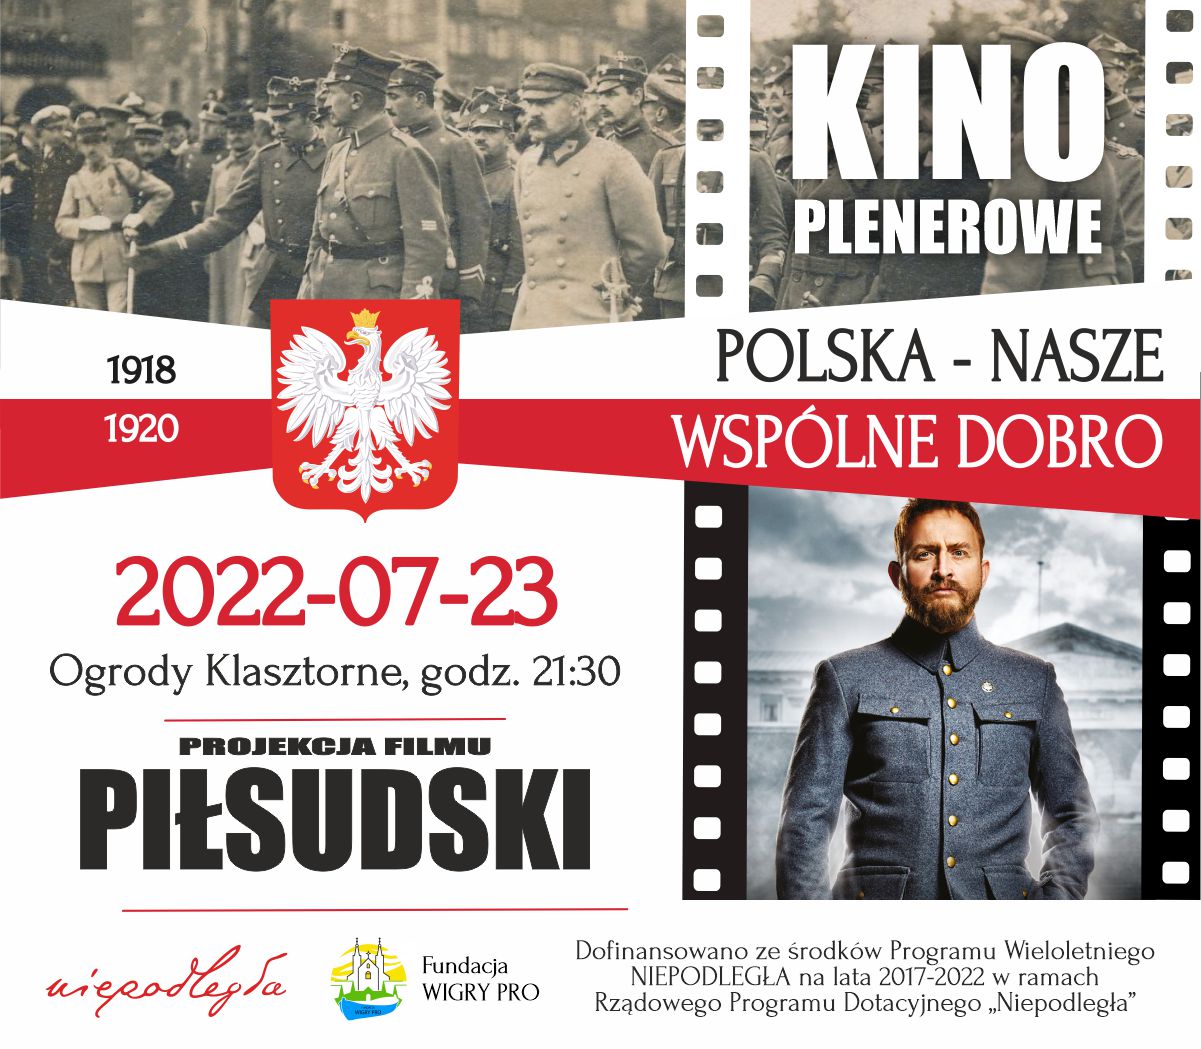 Kino plenerowe zaprasza na film "Piłsudski" 23.07.2022